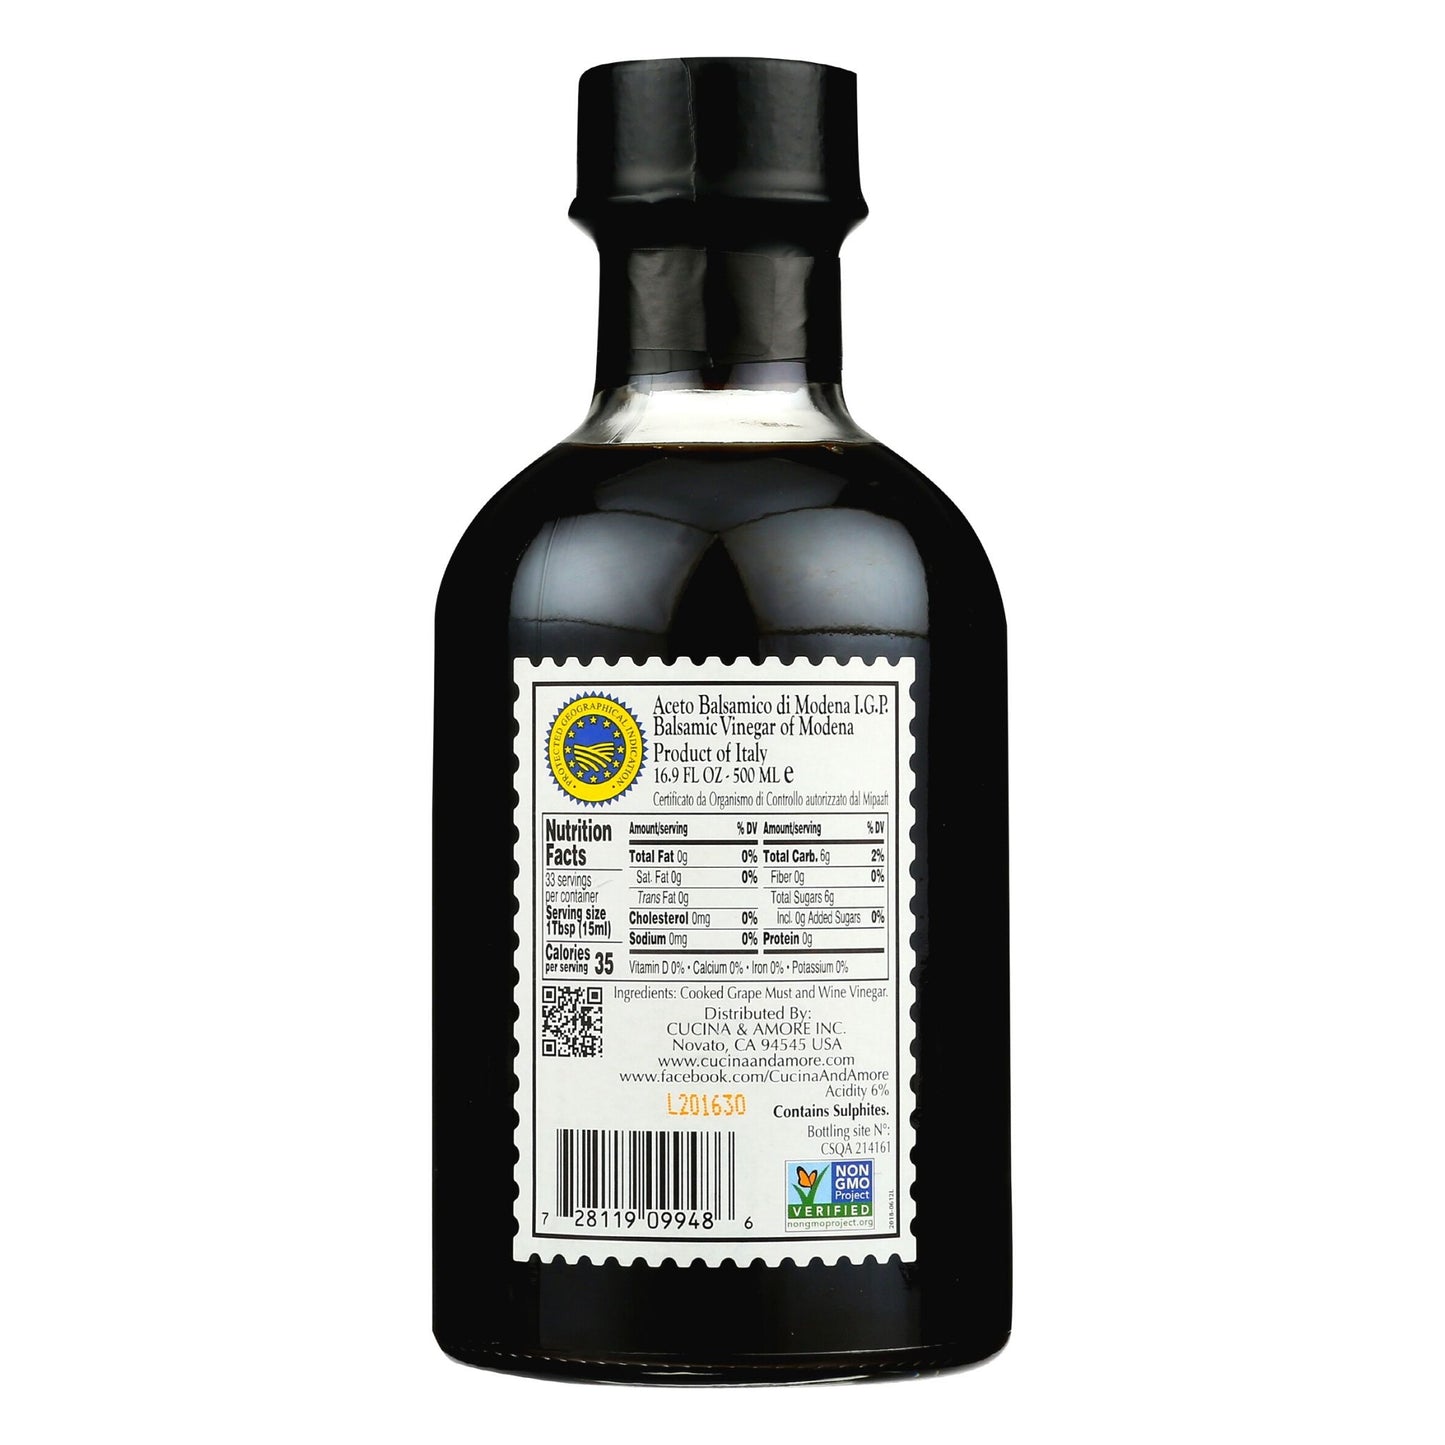 Premium IGP Balsamic Vinegar - 2 Pack